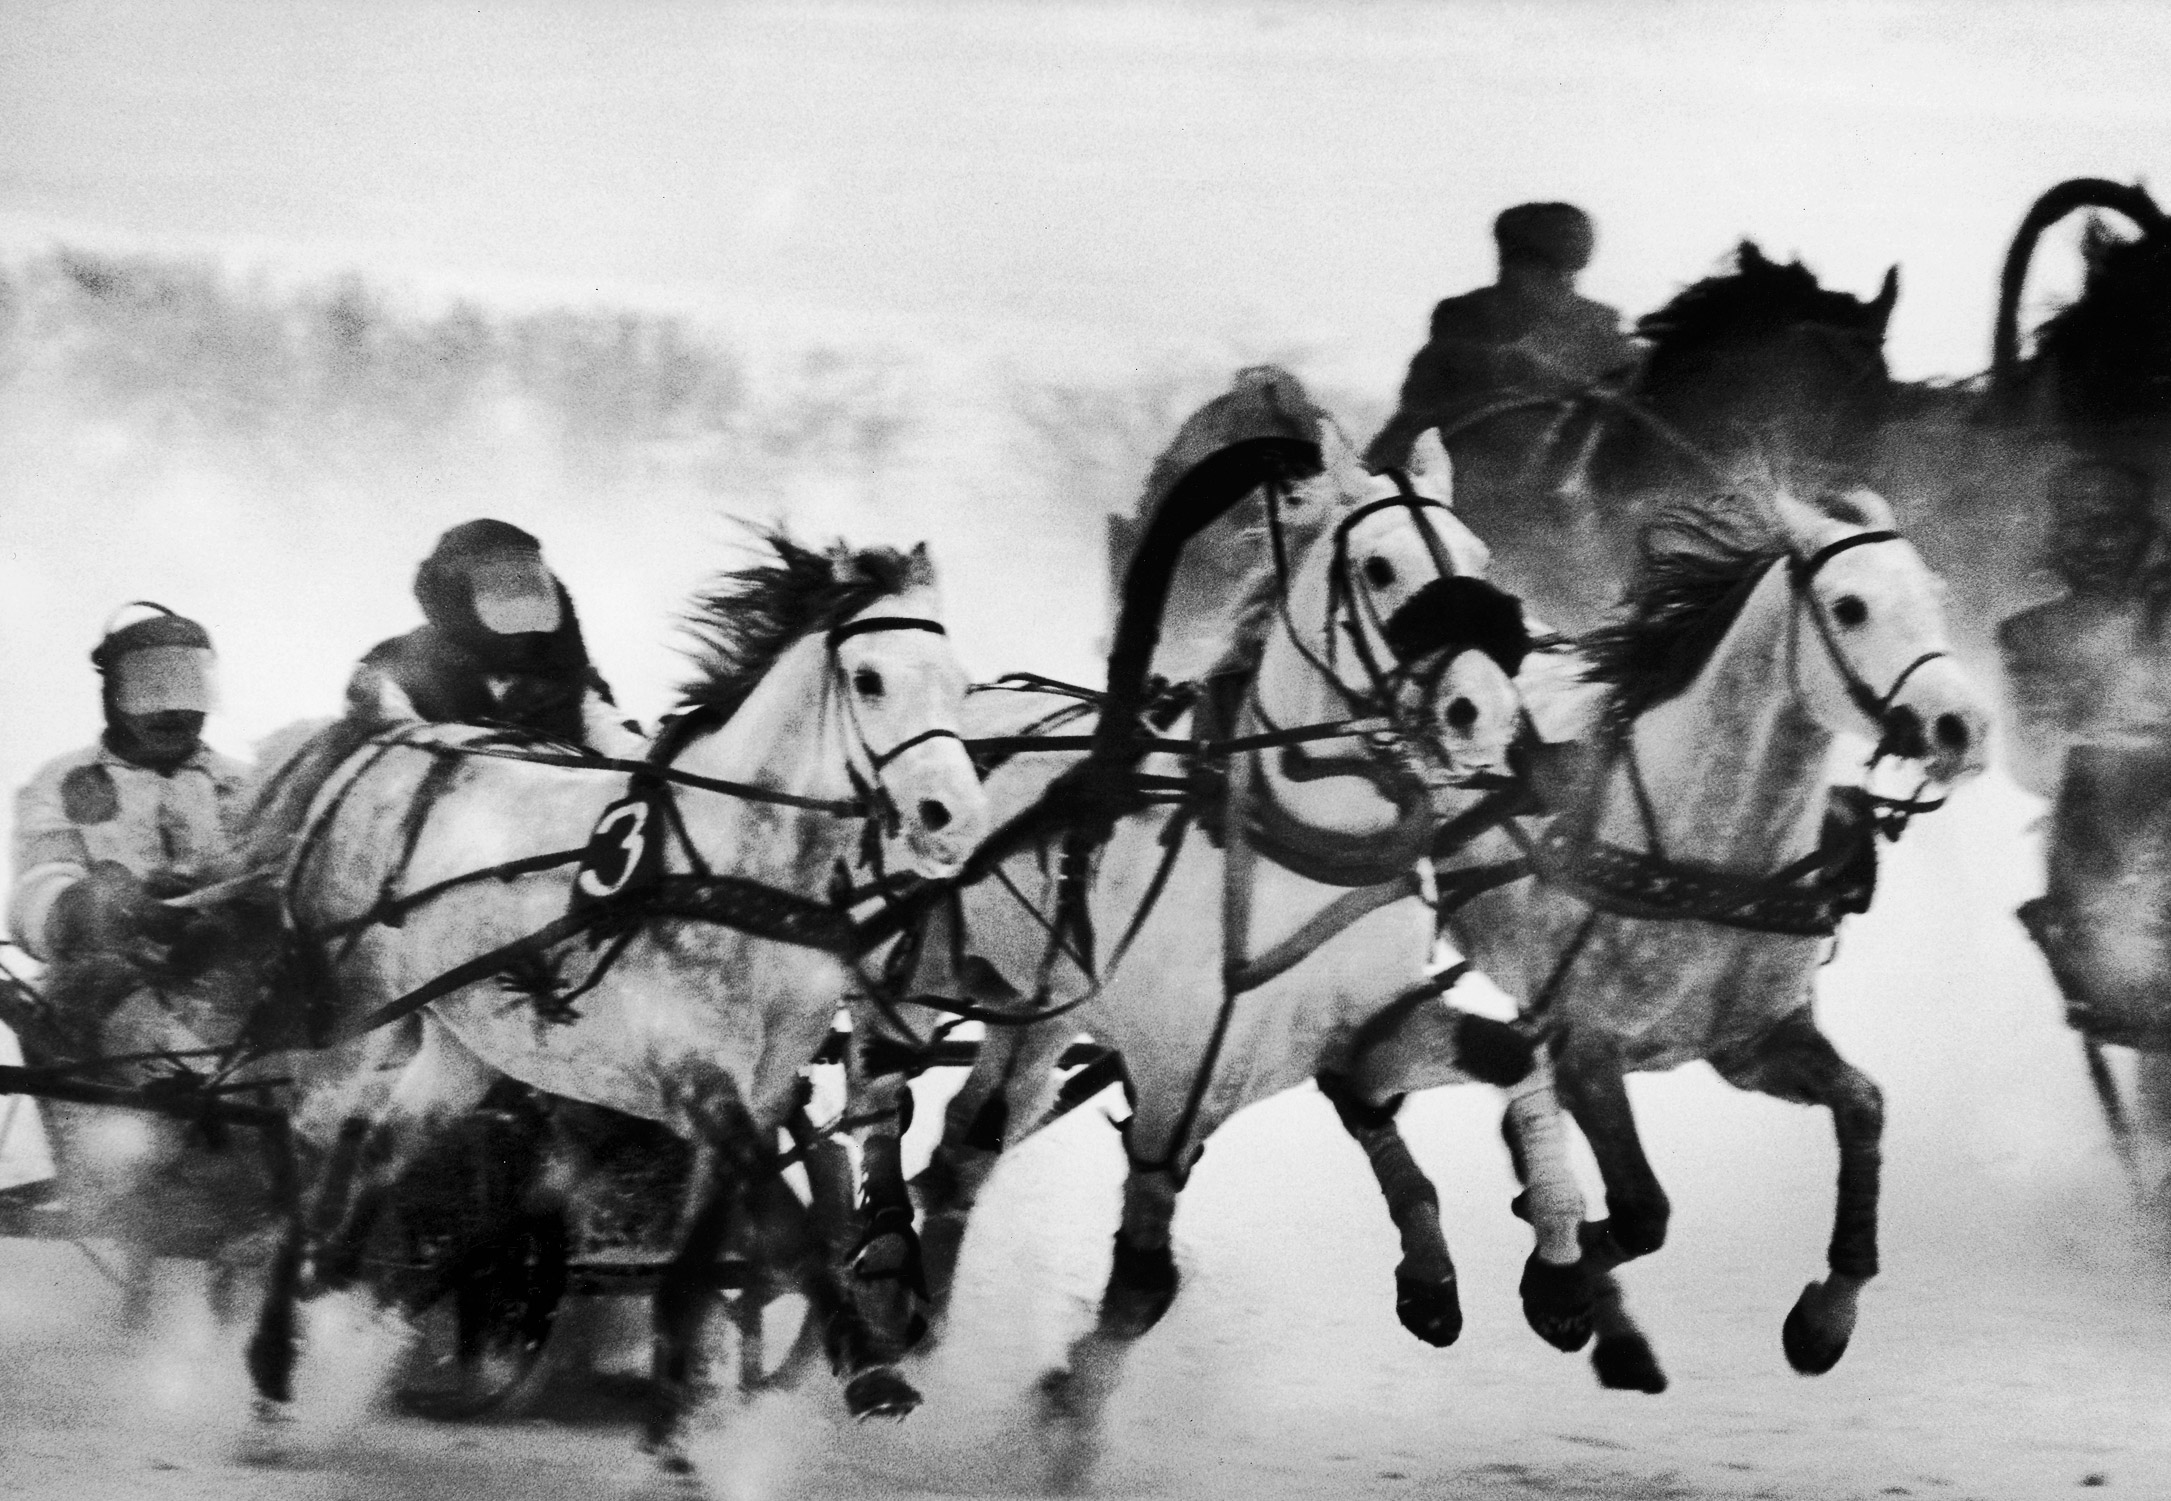 Troika race at Hippodrome, 1963.